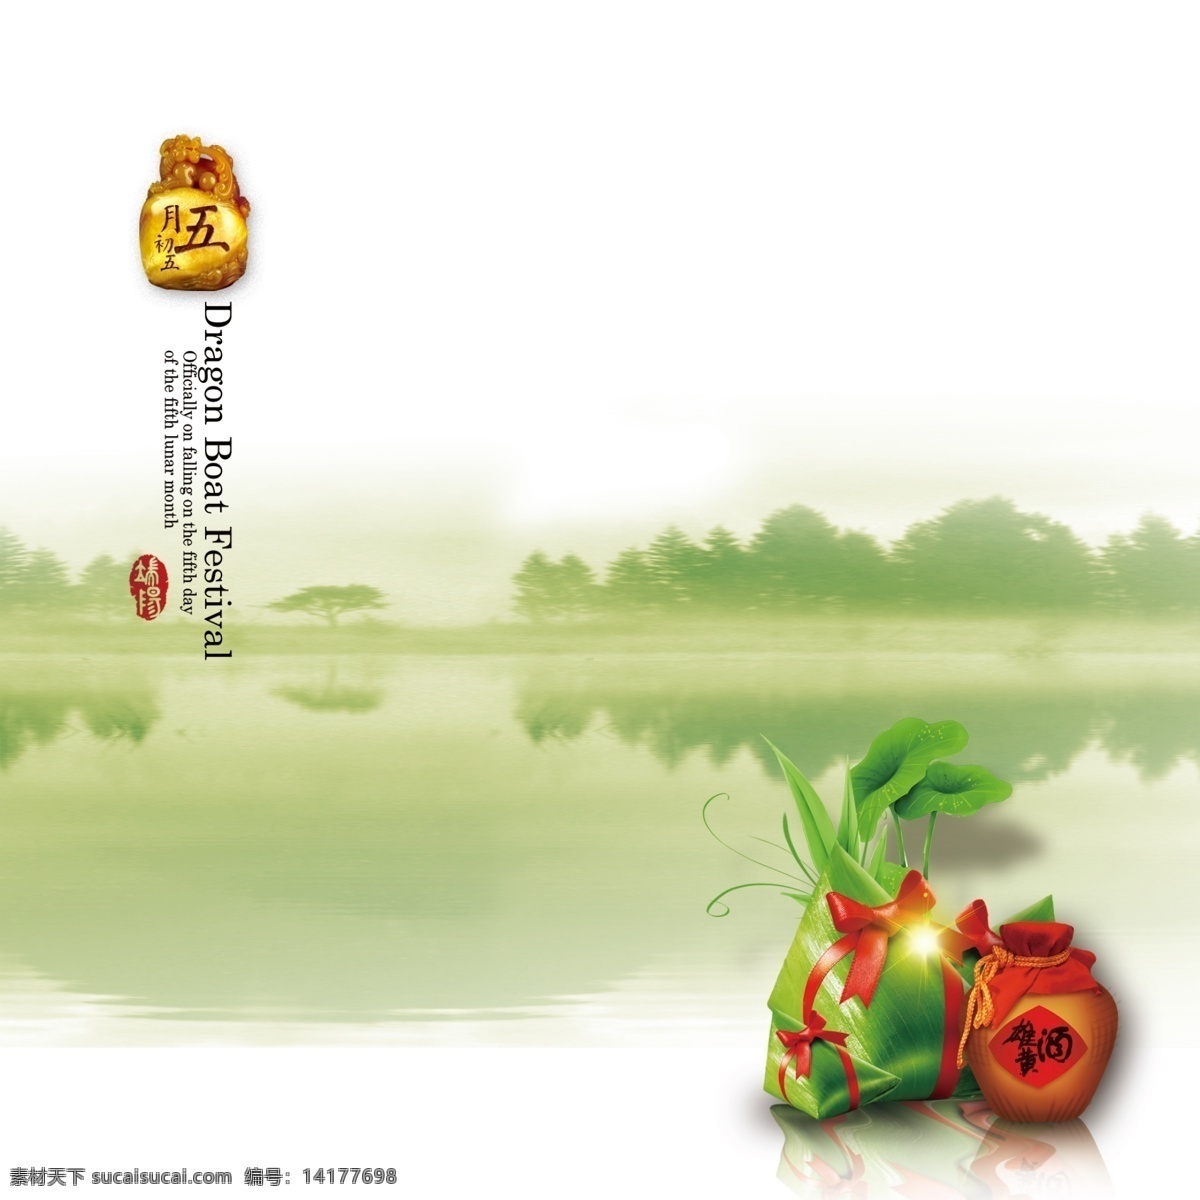 端午节 中国风 绿色 画册封面 五月初五 雄黄酒 分层